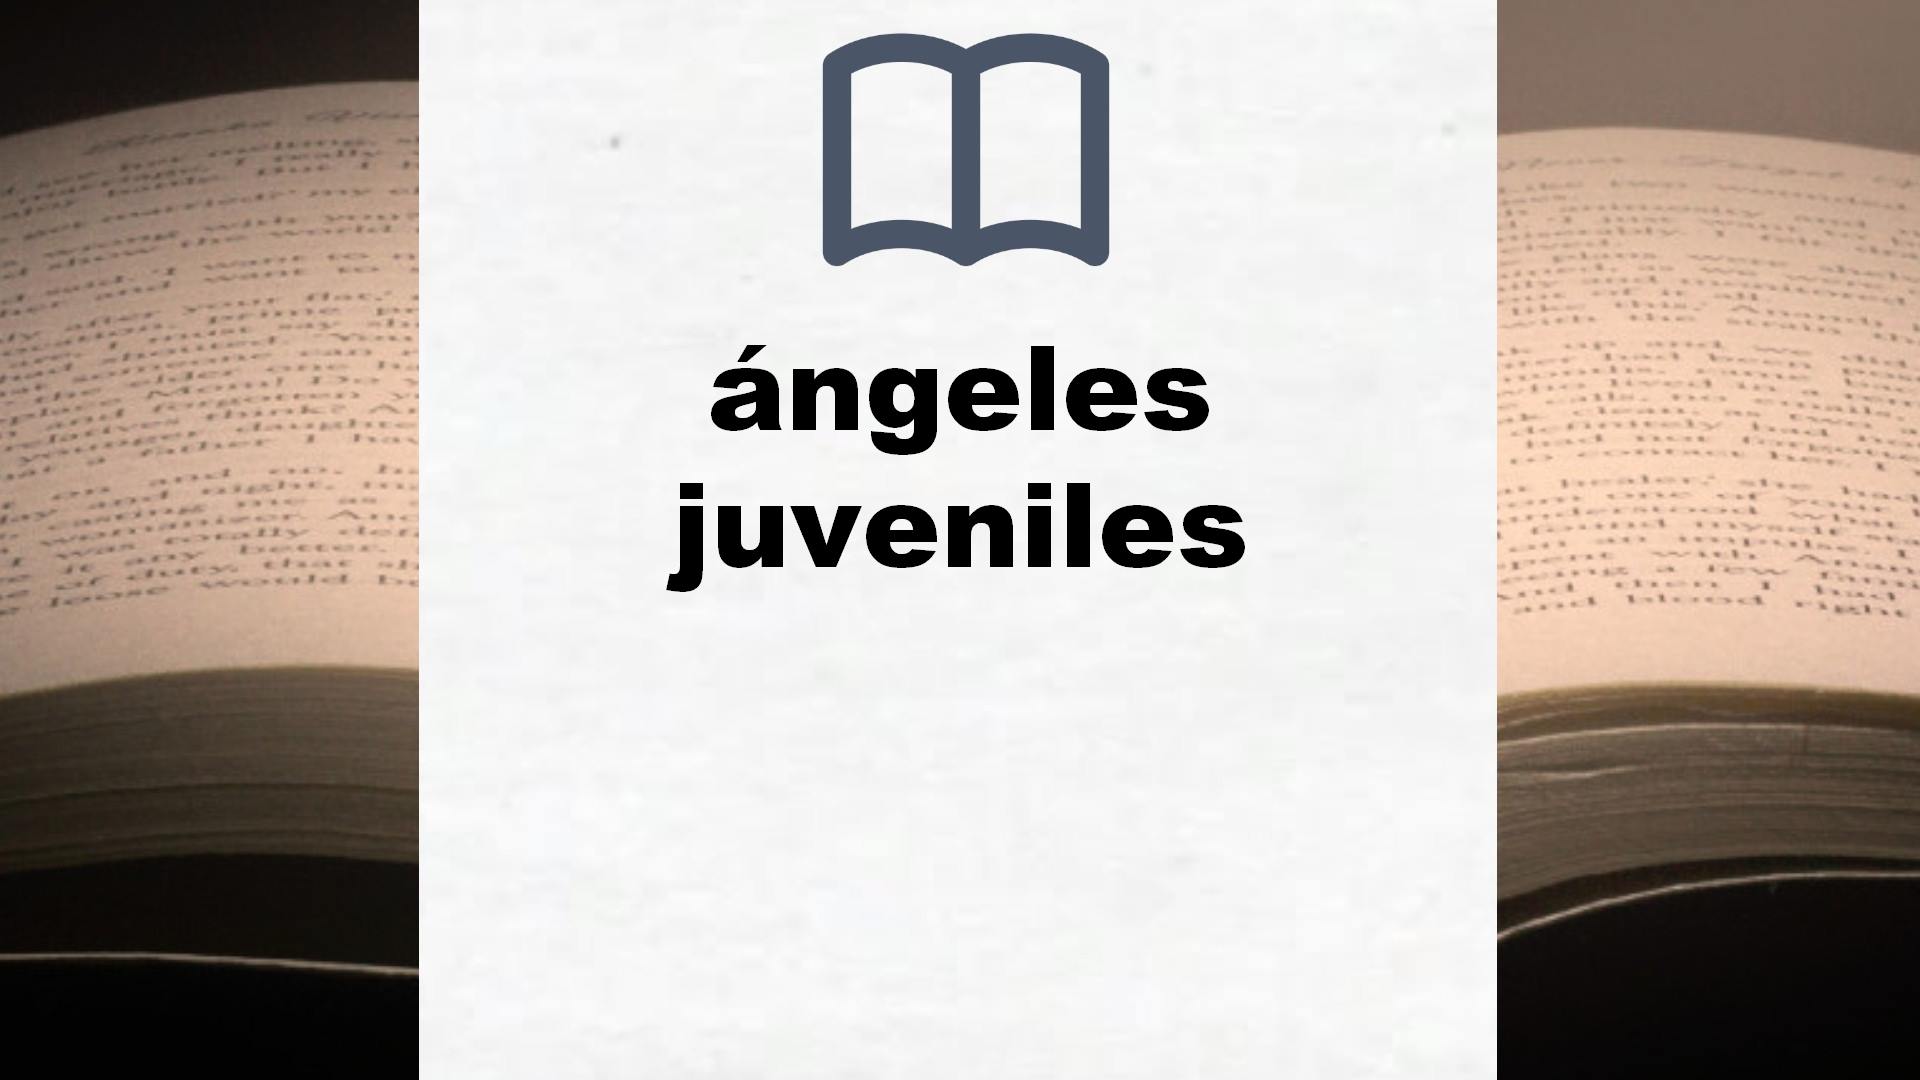 Libros sobre ángeles juveniles